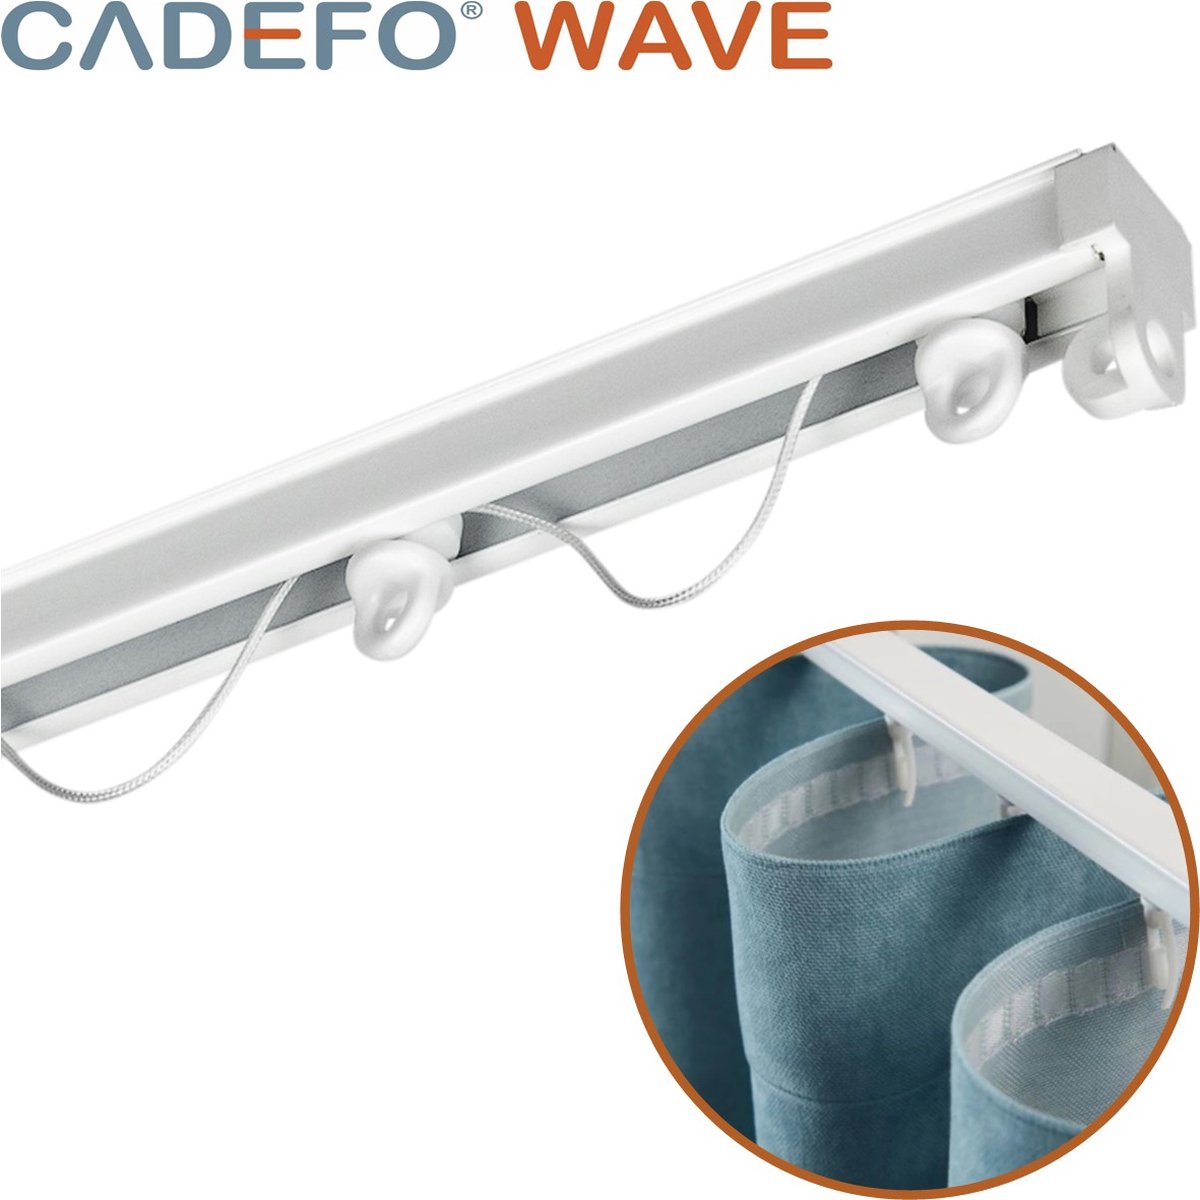 CADEFO WAVE (401 - 450 cm) Gordijnrails - Compleet op maat! - UIT 1 STUK - Leverbaar tot 6 meter - Plafondbevestiging - Lengte 431 cm